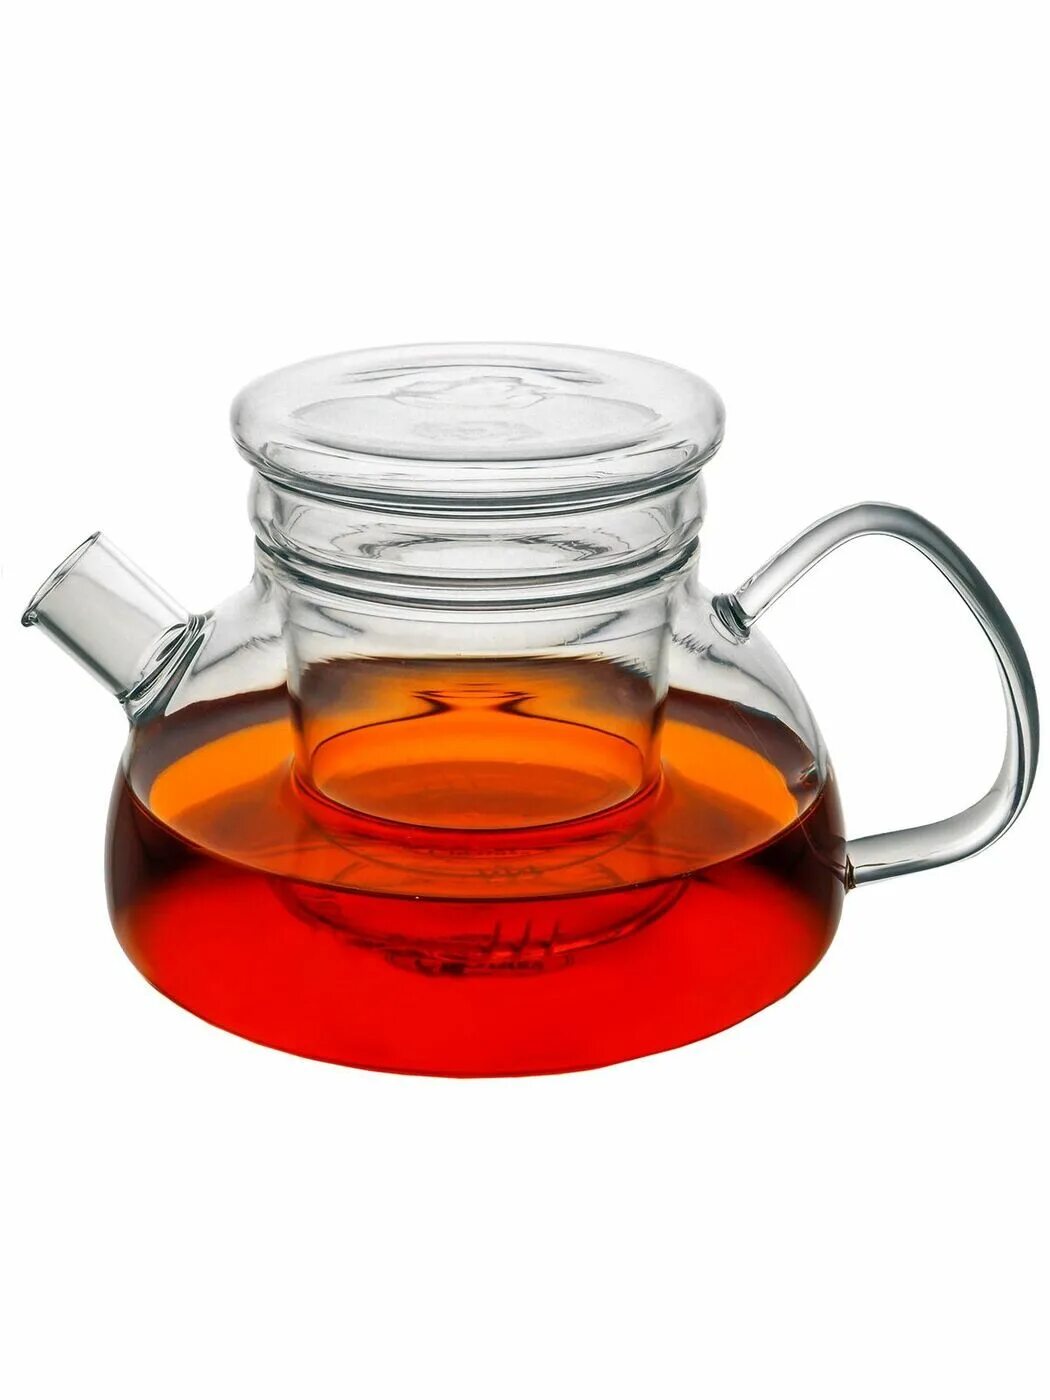 Стеклянный чайник купить москва. CNGLASS чайник заварочный стеклянный. CNGLASS чайник заварочный стеклянный с колбой фильтром 600 мл. Чайник заварочный CNGLASS, 600 мл. Чайник заварочный CNGLASS, 1200.